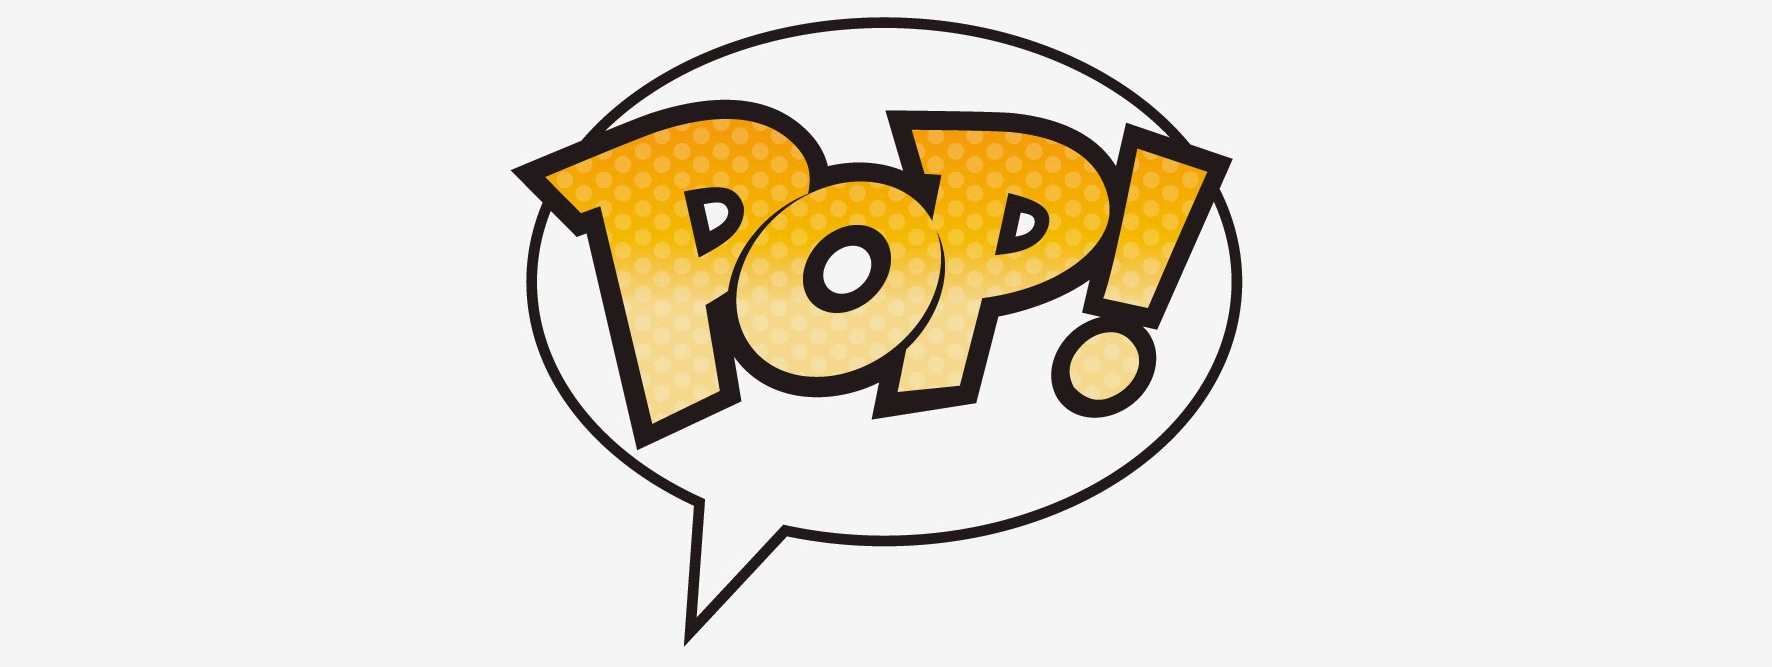 Pop логотип